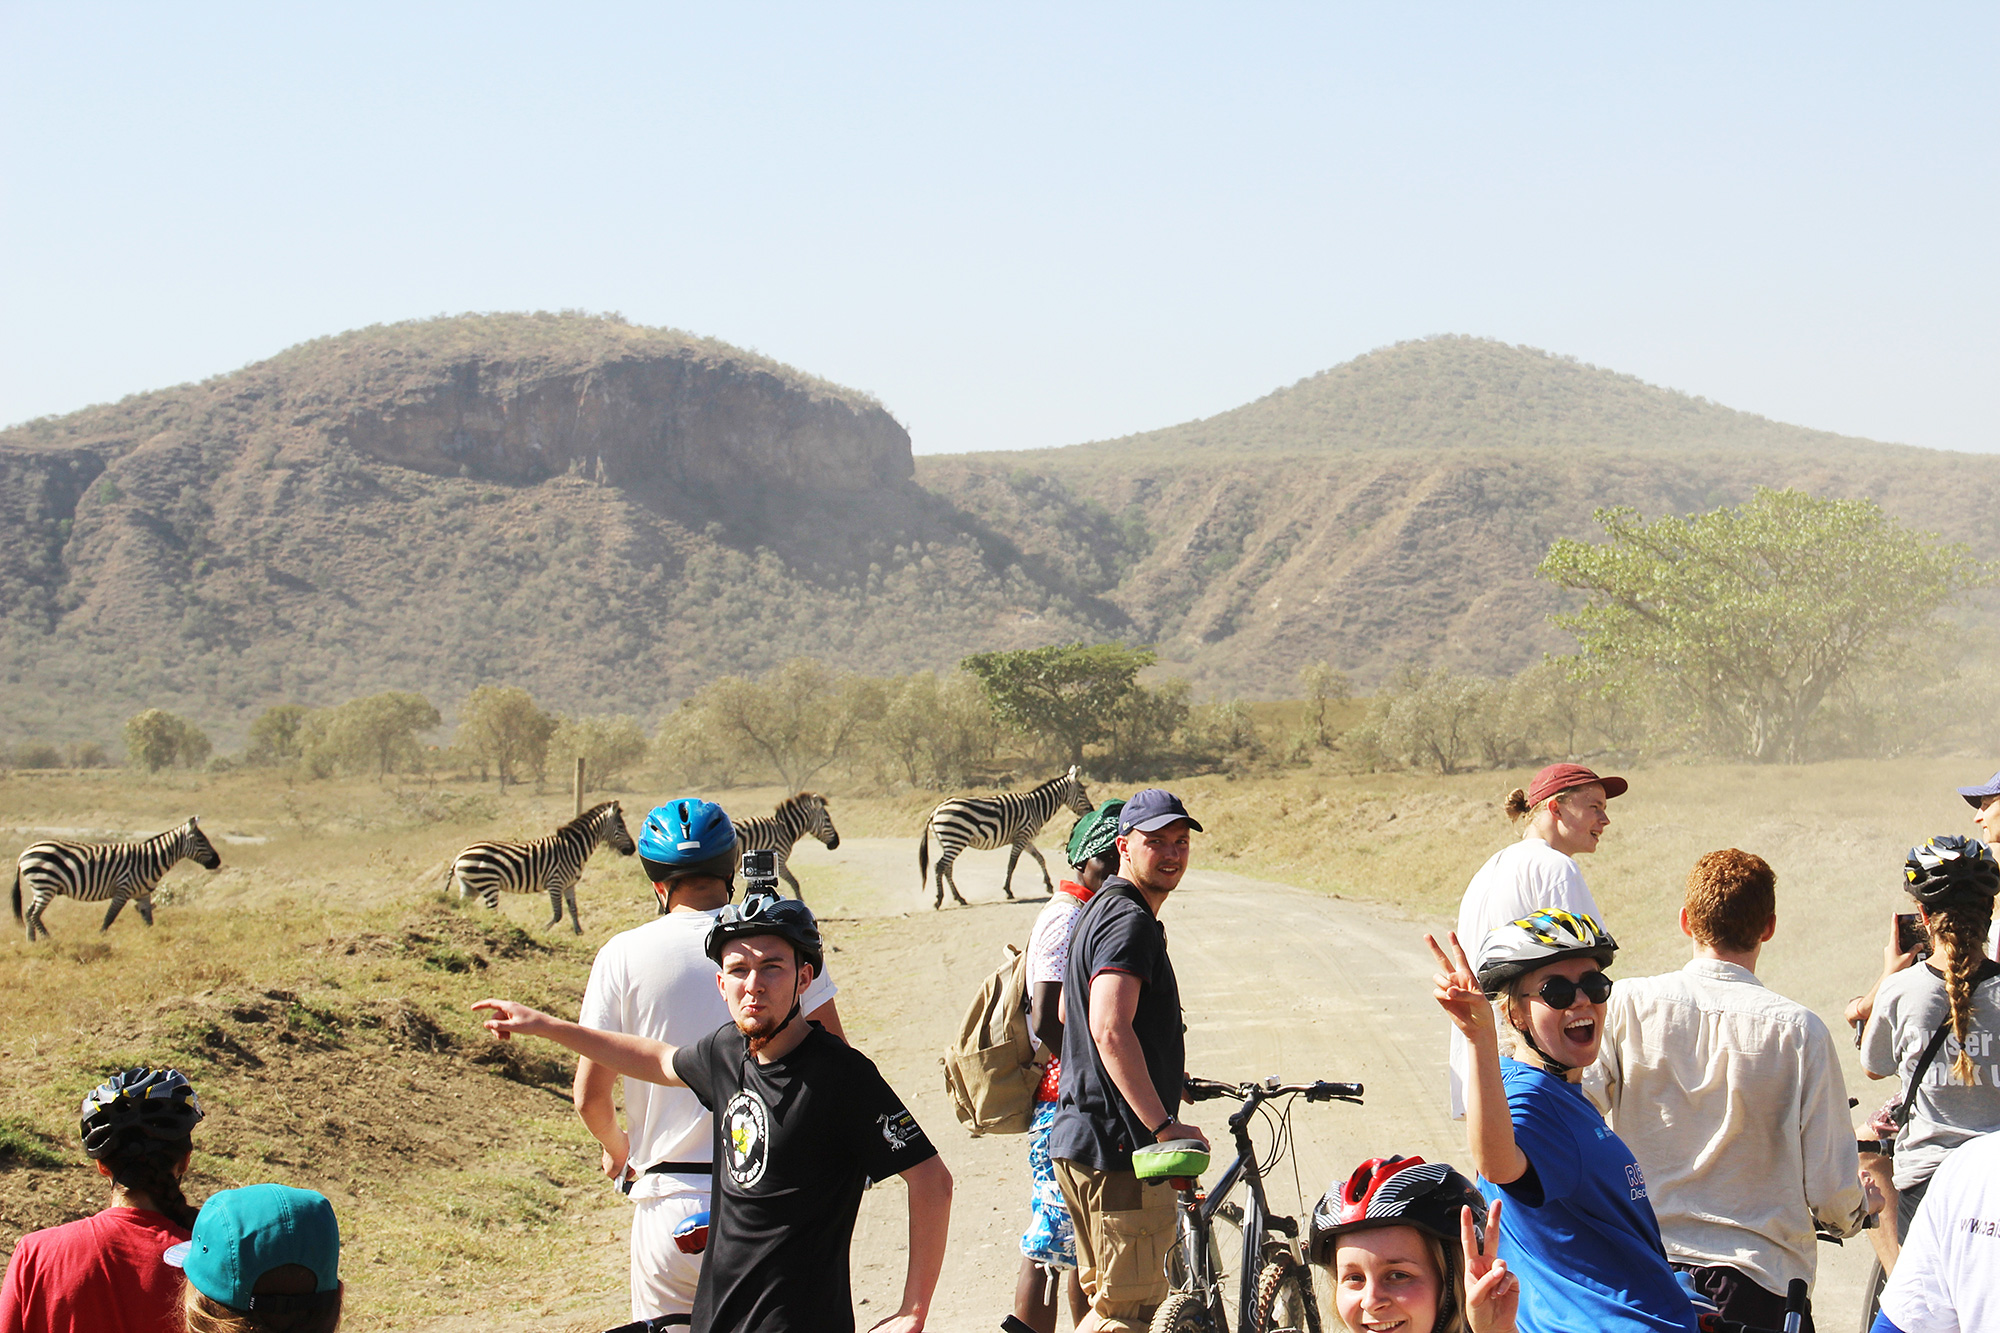 En del af turen til Kenya rummer en cykel- og vandretur i Hells Gate med vilde dyr omkring os (dog ikke løver :)